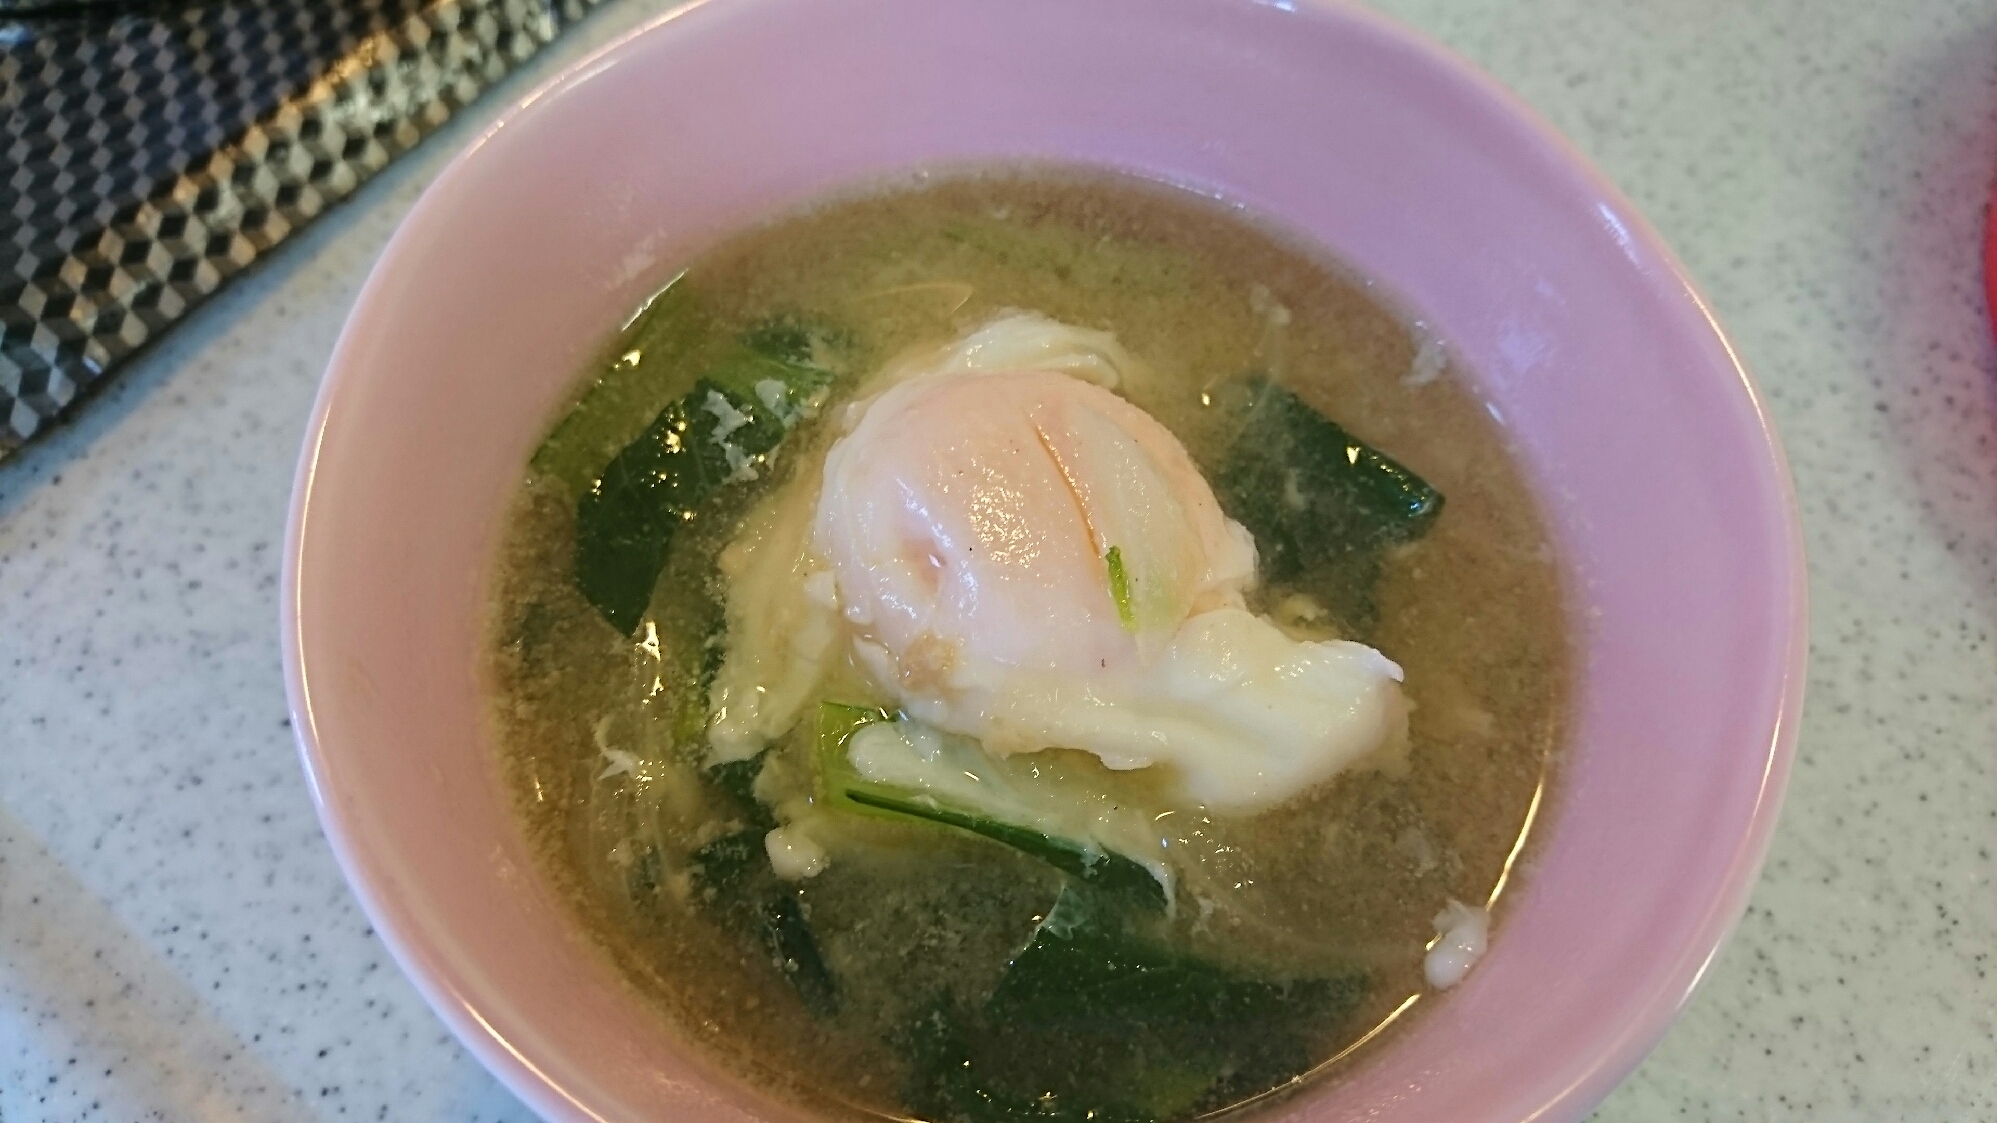 小松菜と玉ねぎの味噌汁(たまご入り)